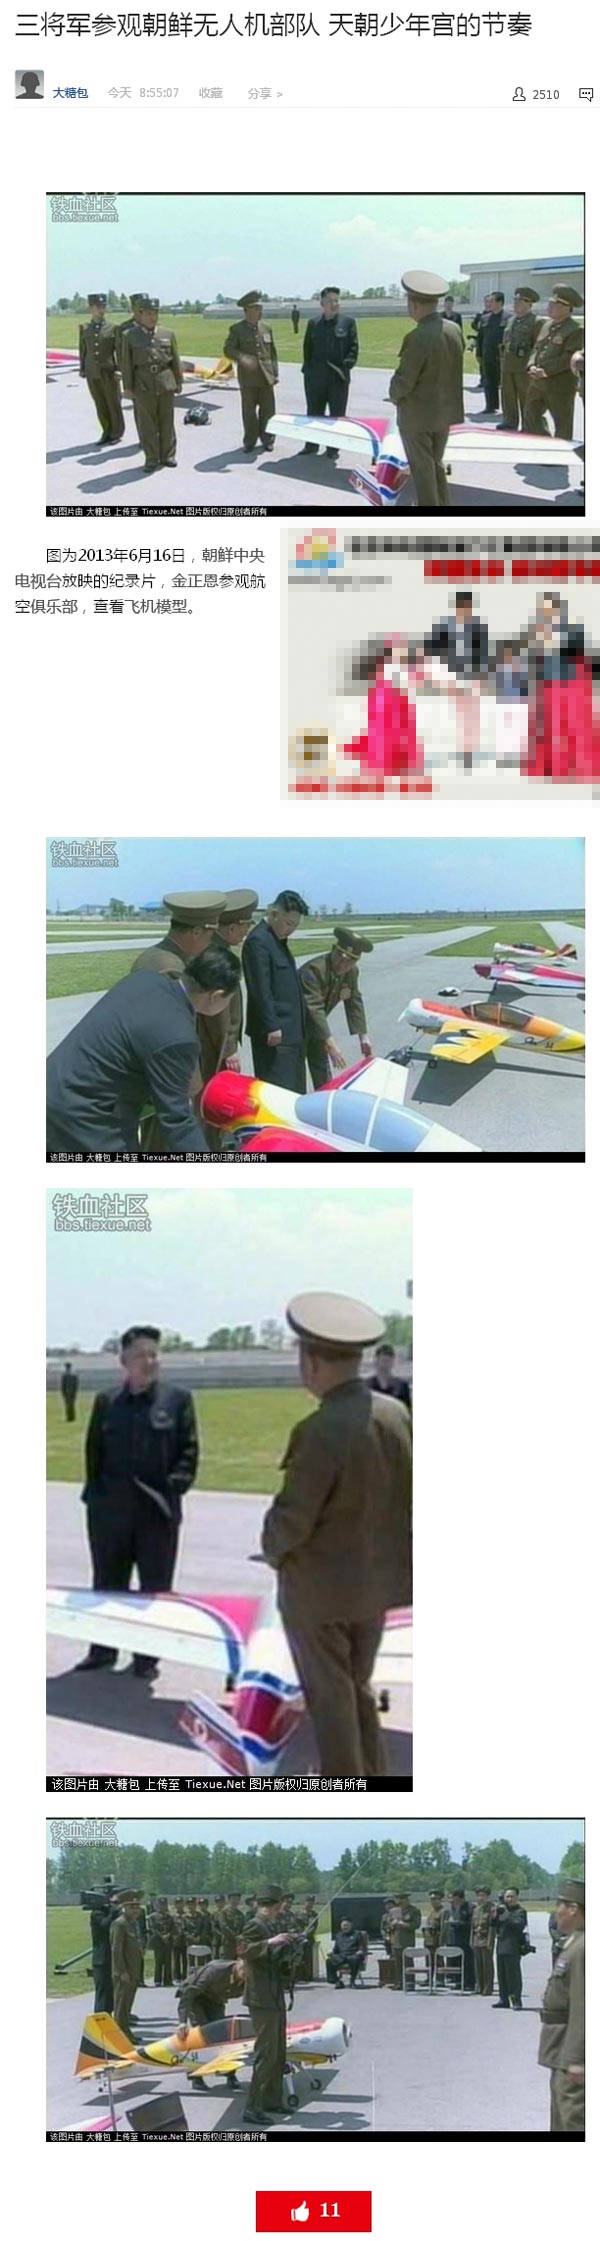 金正恩参观朝鲜无人机部队 网友吐槽被赞